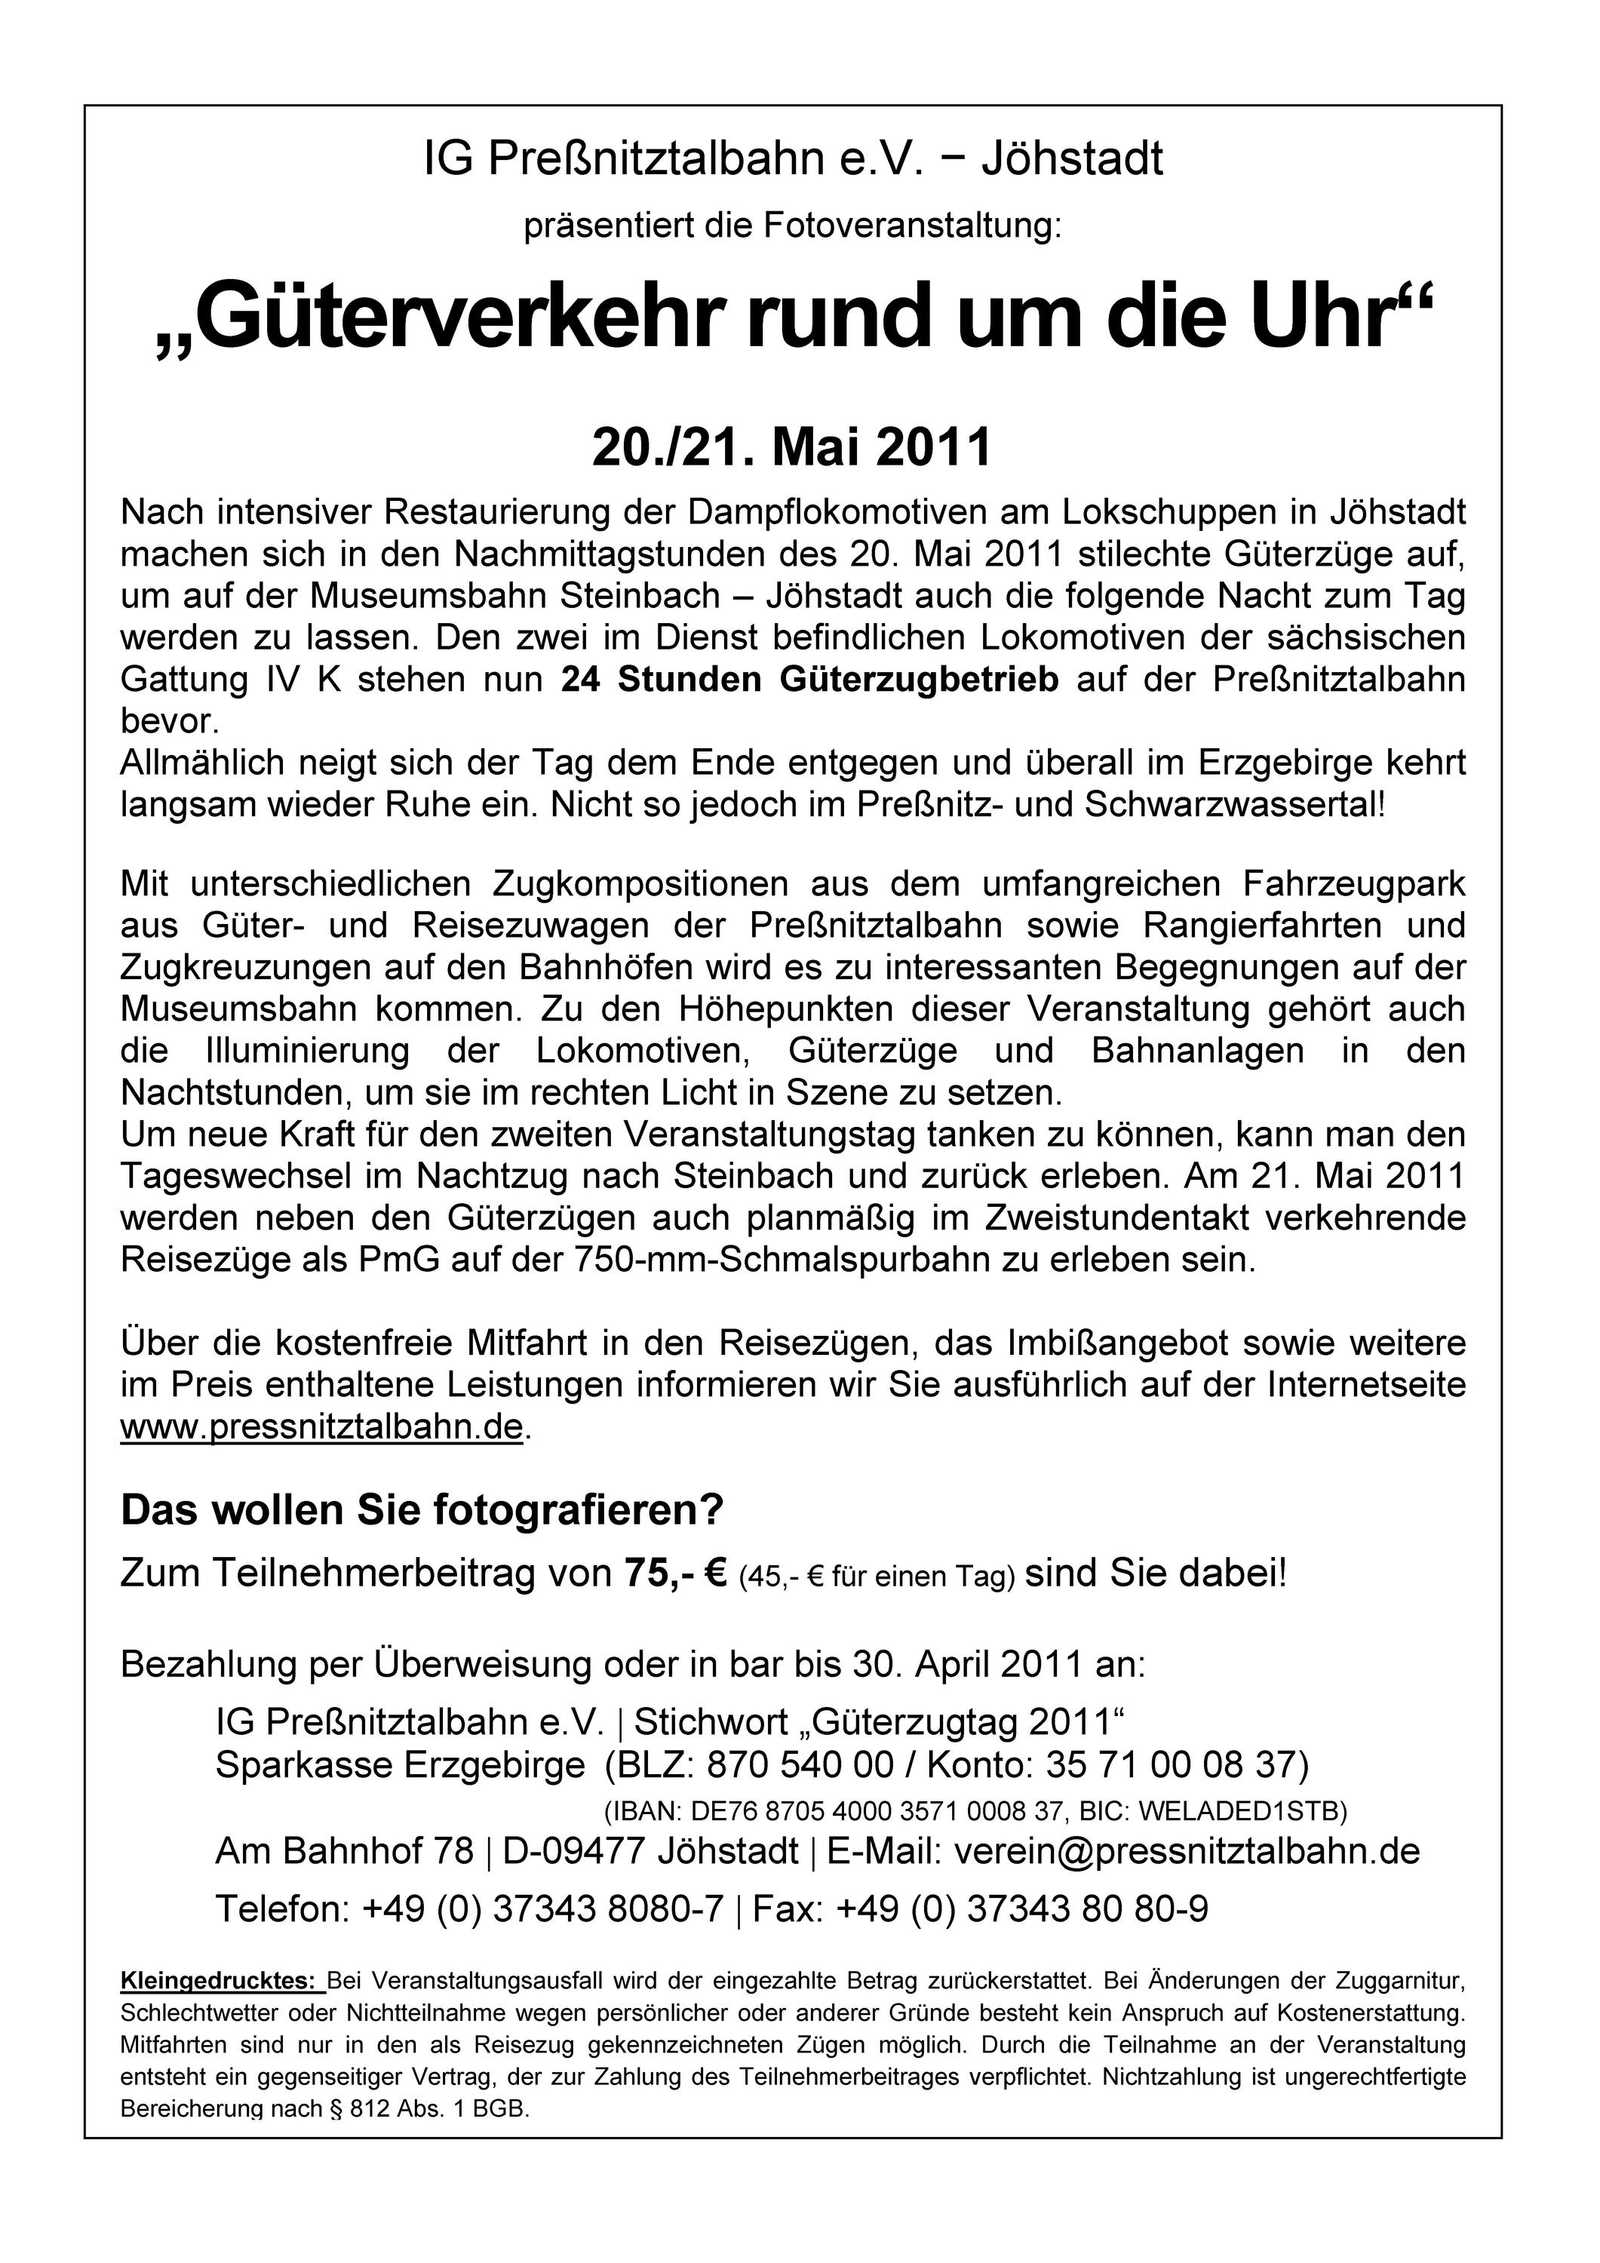 Veranstaltungsankündigung "Güterverkehr rund um die Uhr" 20./21. Mai 2011